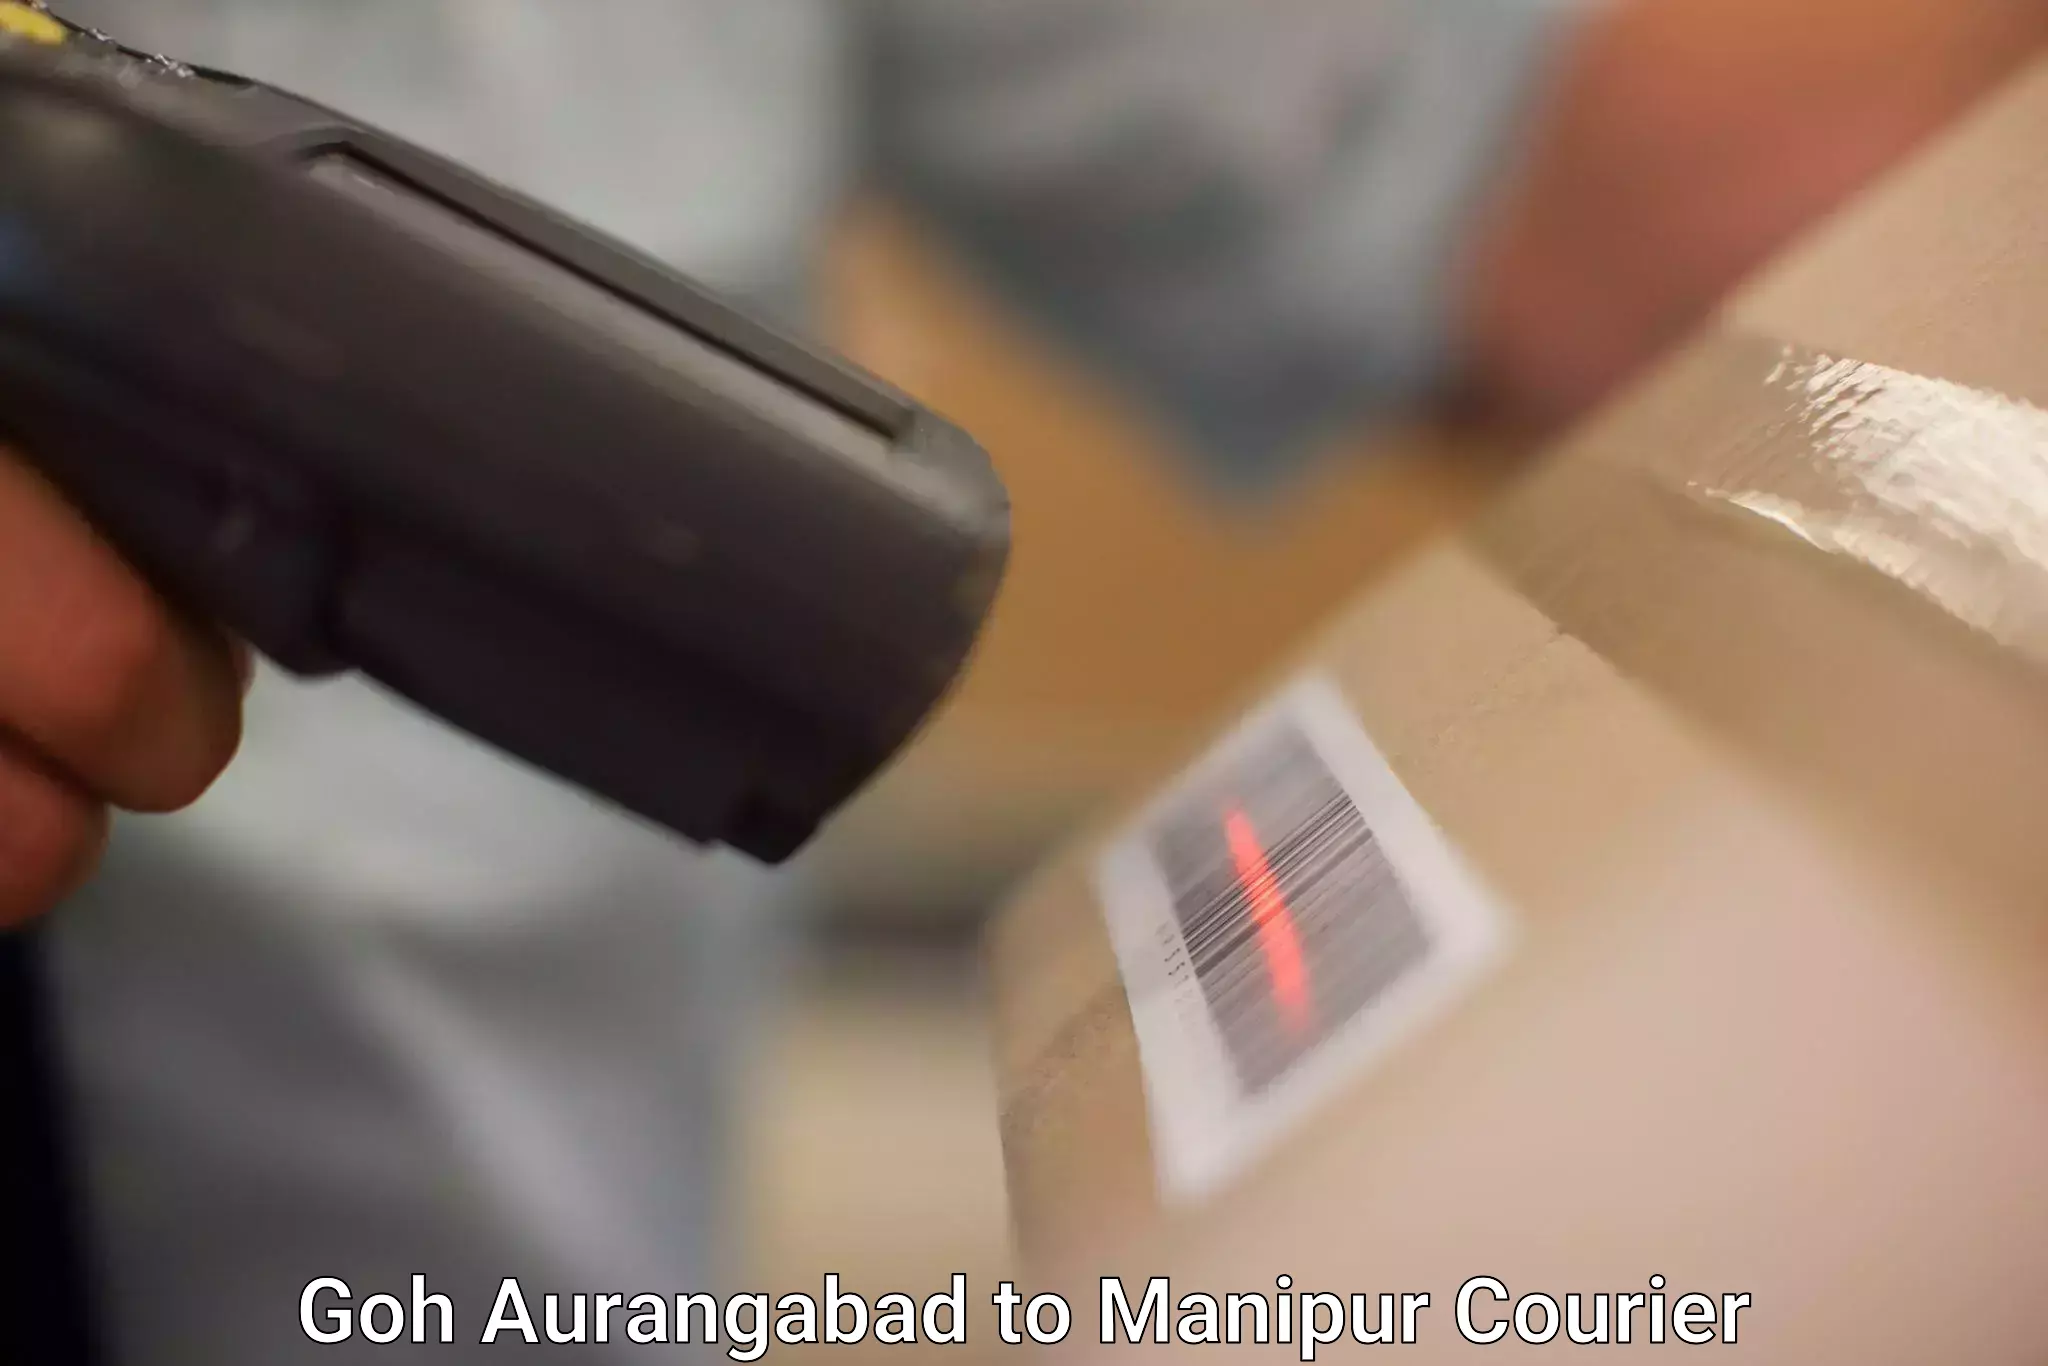 Urgent courier needs Goh Aurangabad to Thoubal